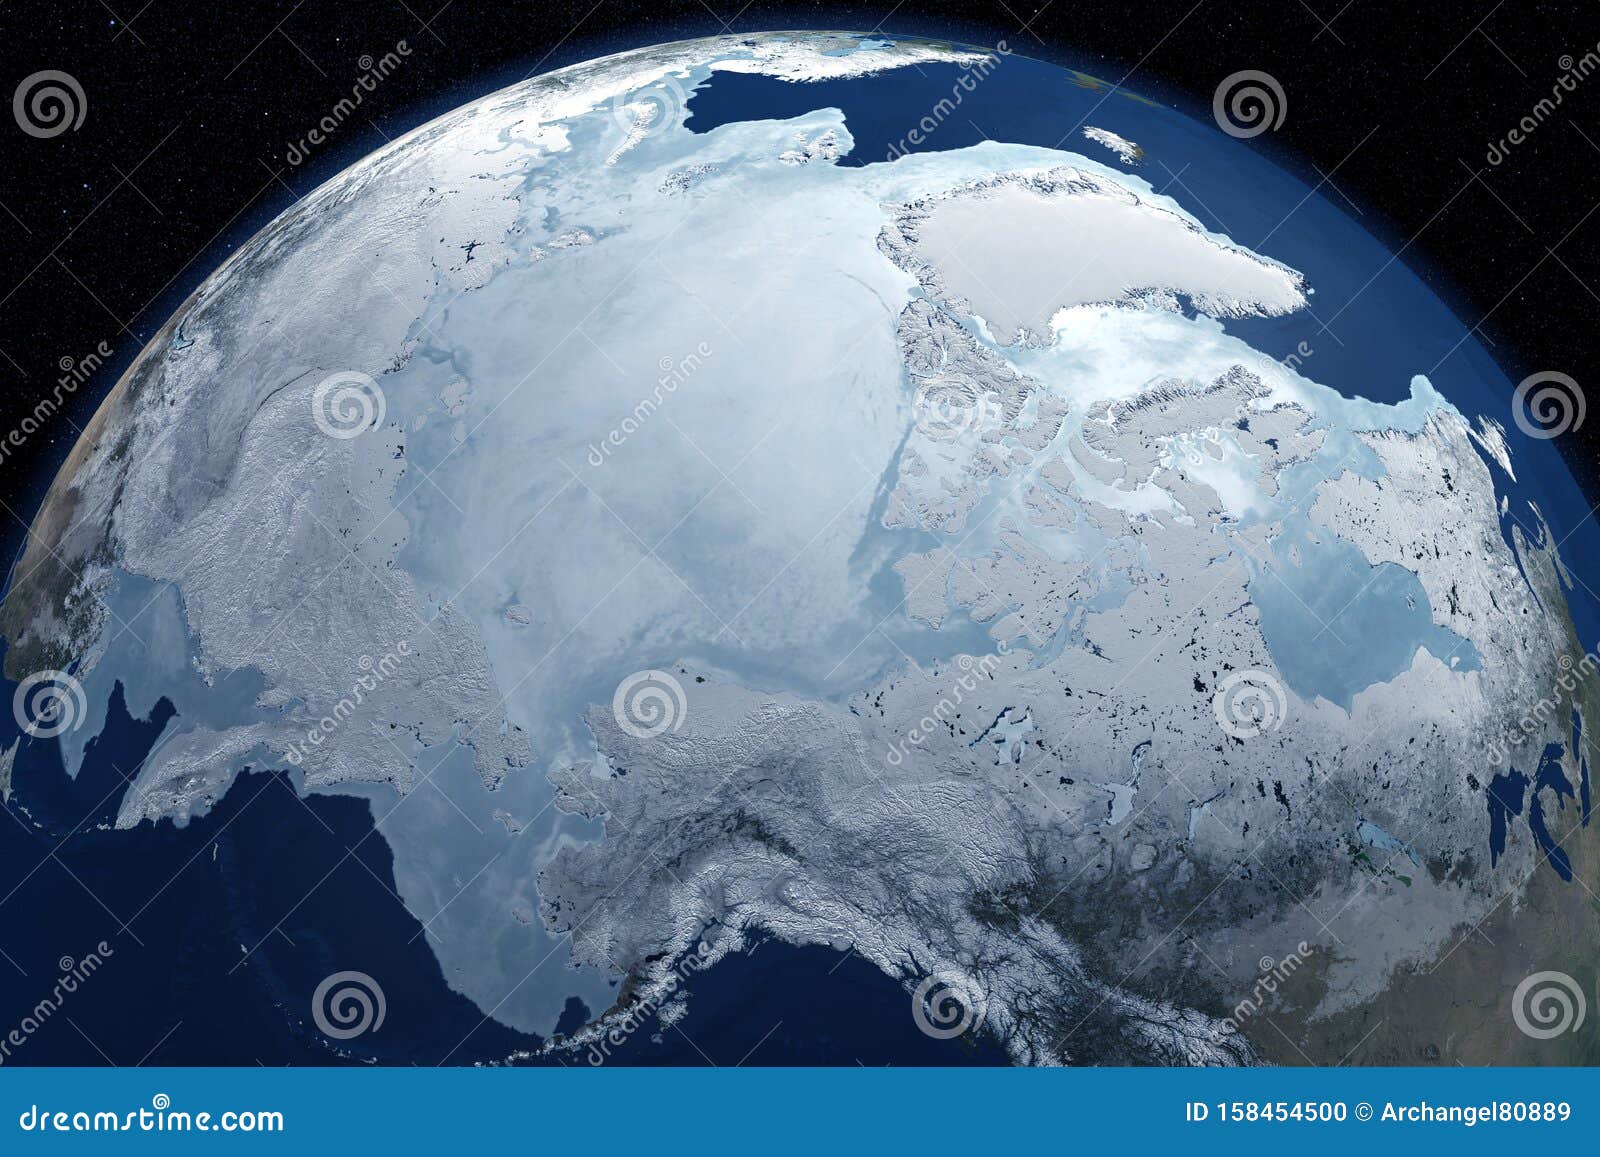 Rusia 'conquista' el Polo Norte, Fotos, Fotos